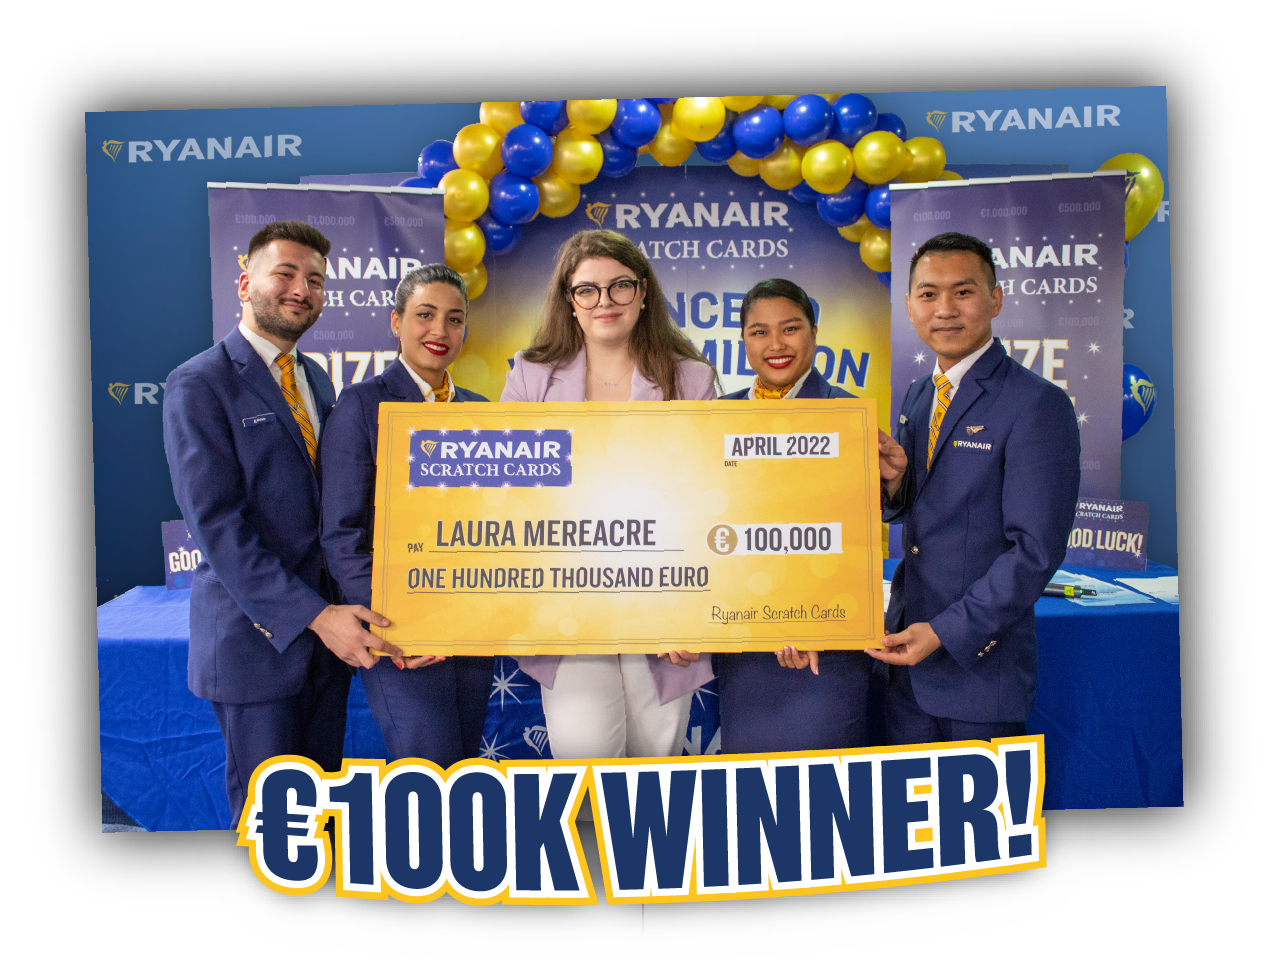 Laura Mereacre €100K winner!